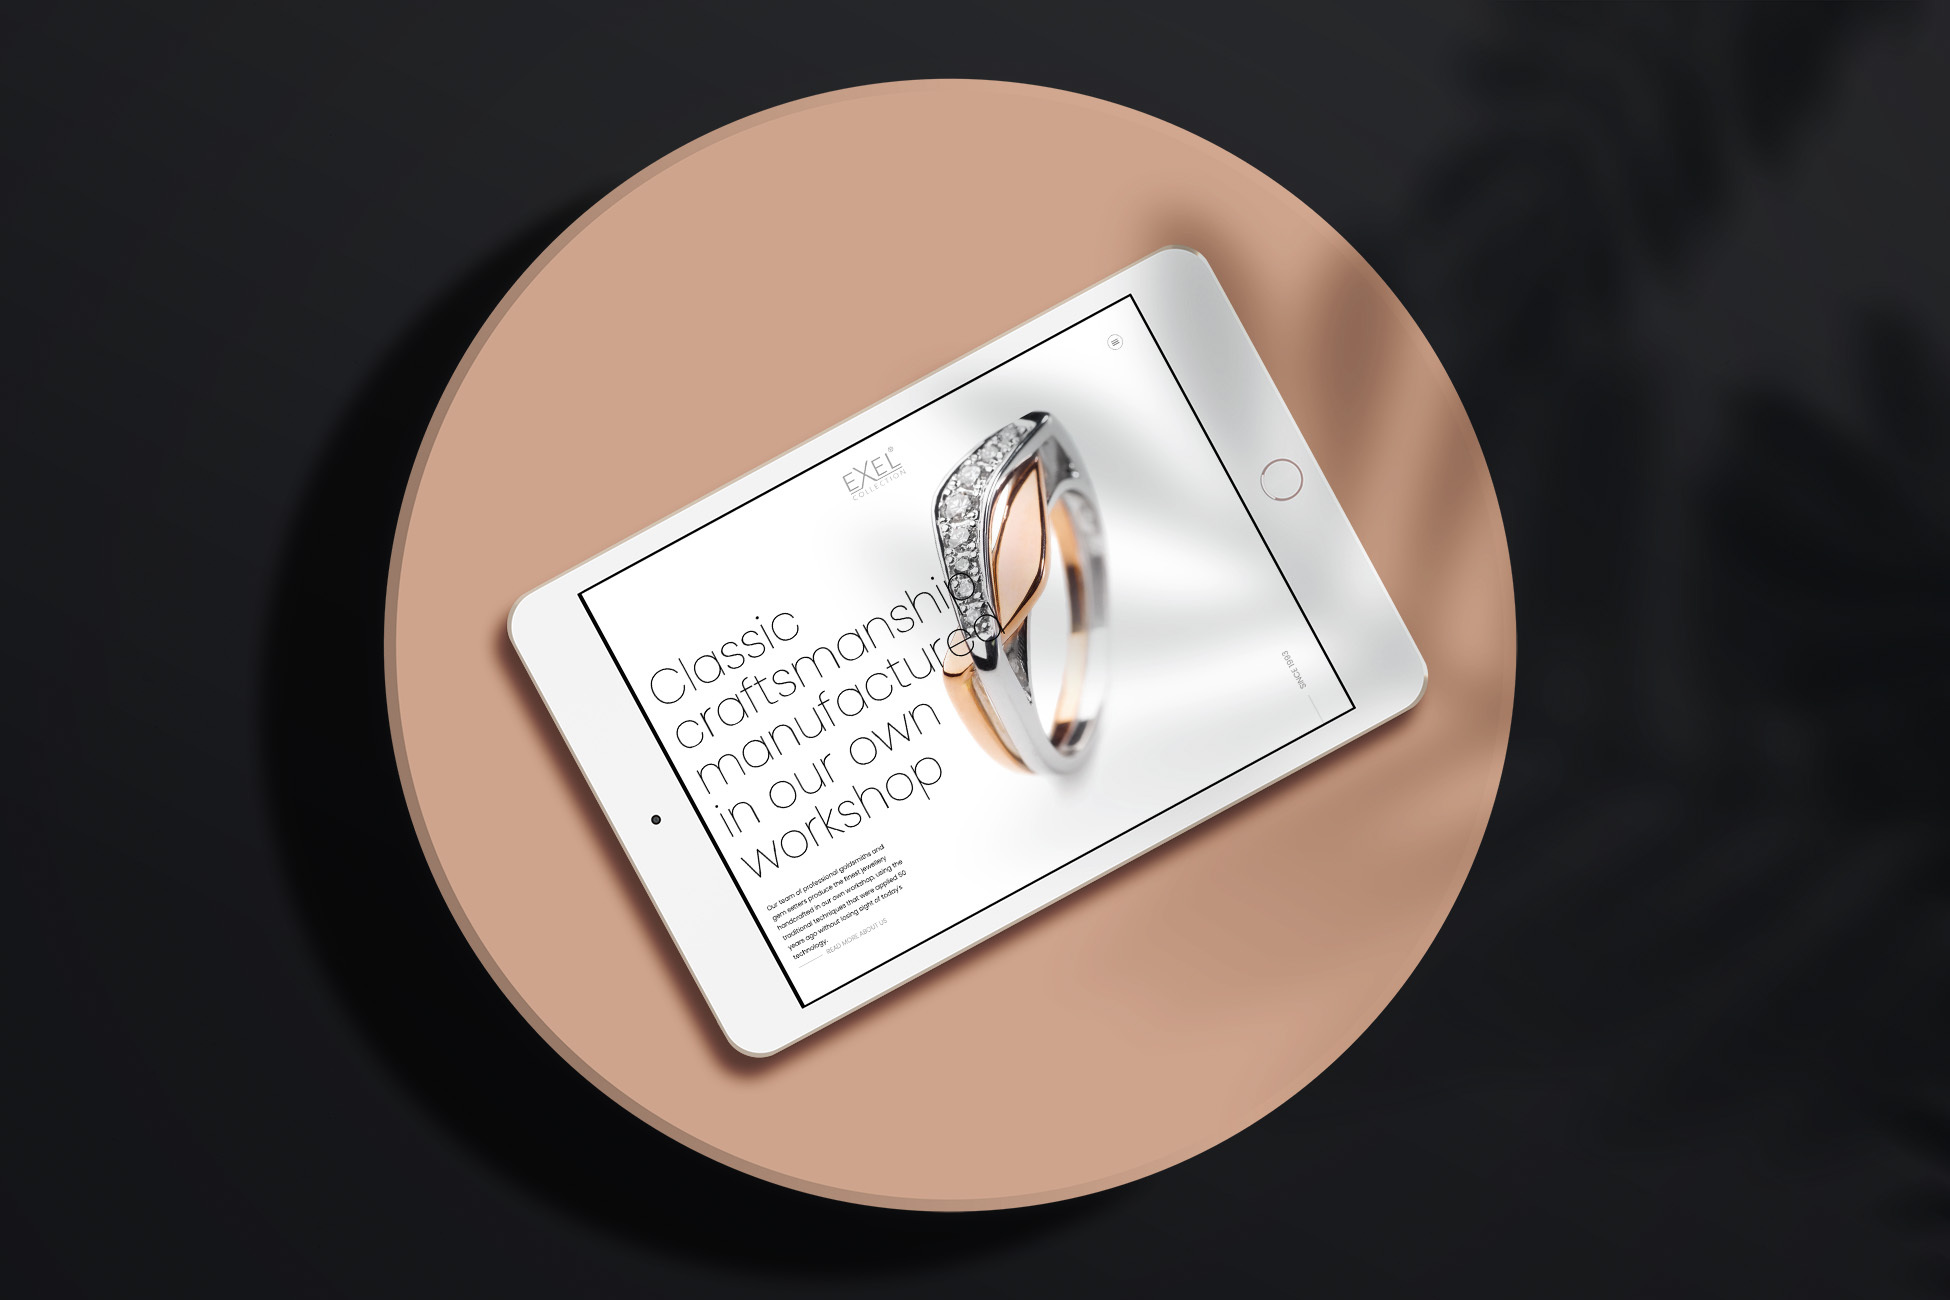 Website van Exel Collection uit Kortrijk, gepresenteerd in een witte iPad. De juwelen worden gepresenteerd.